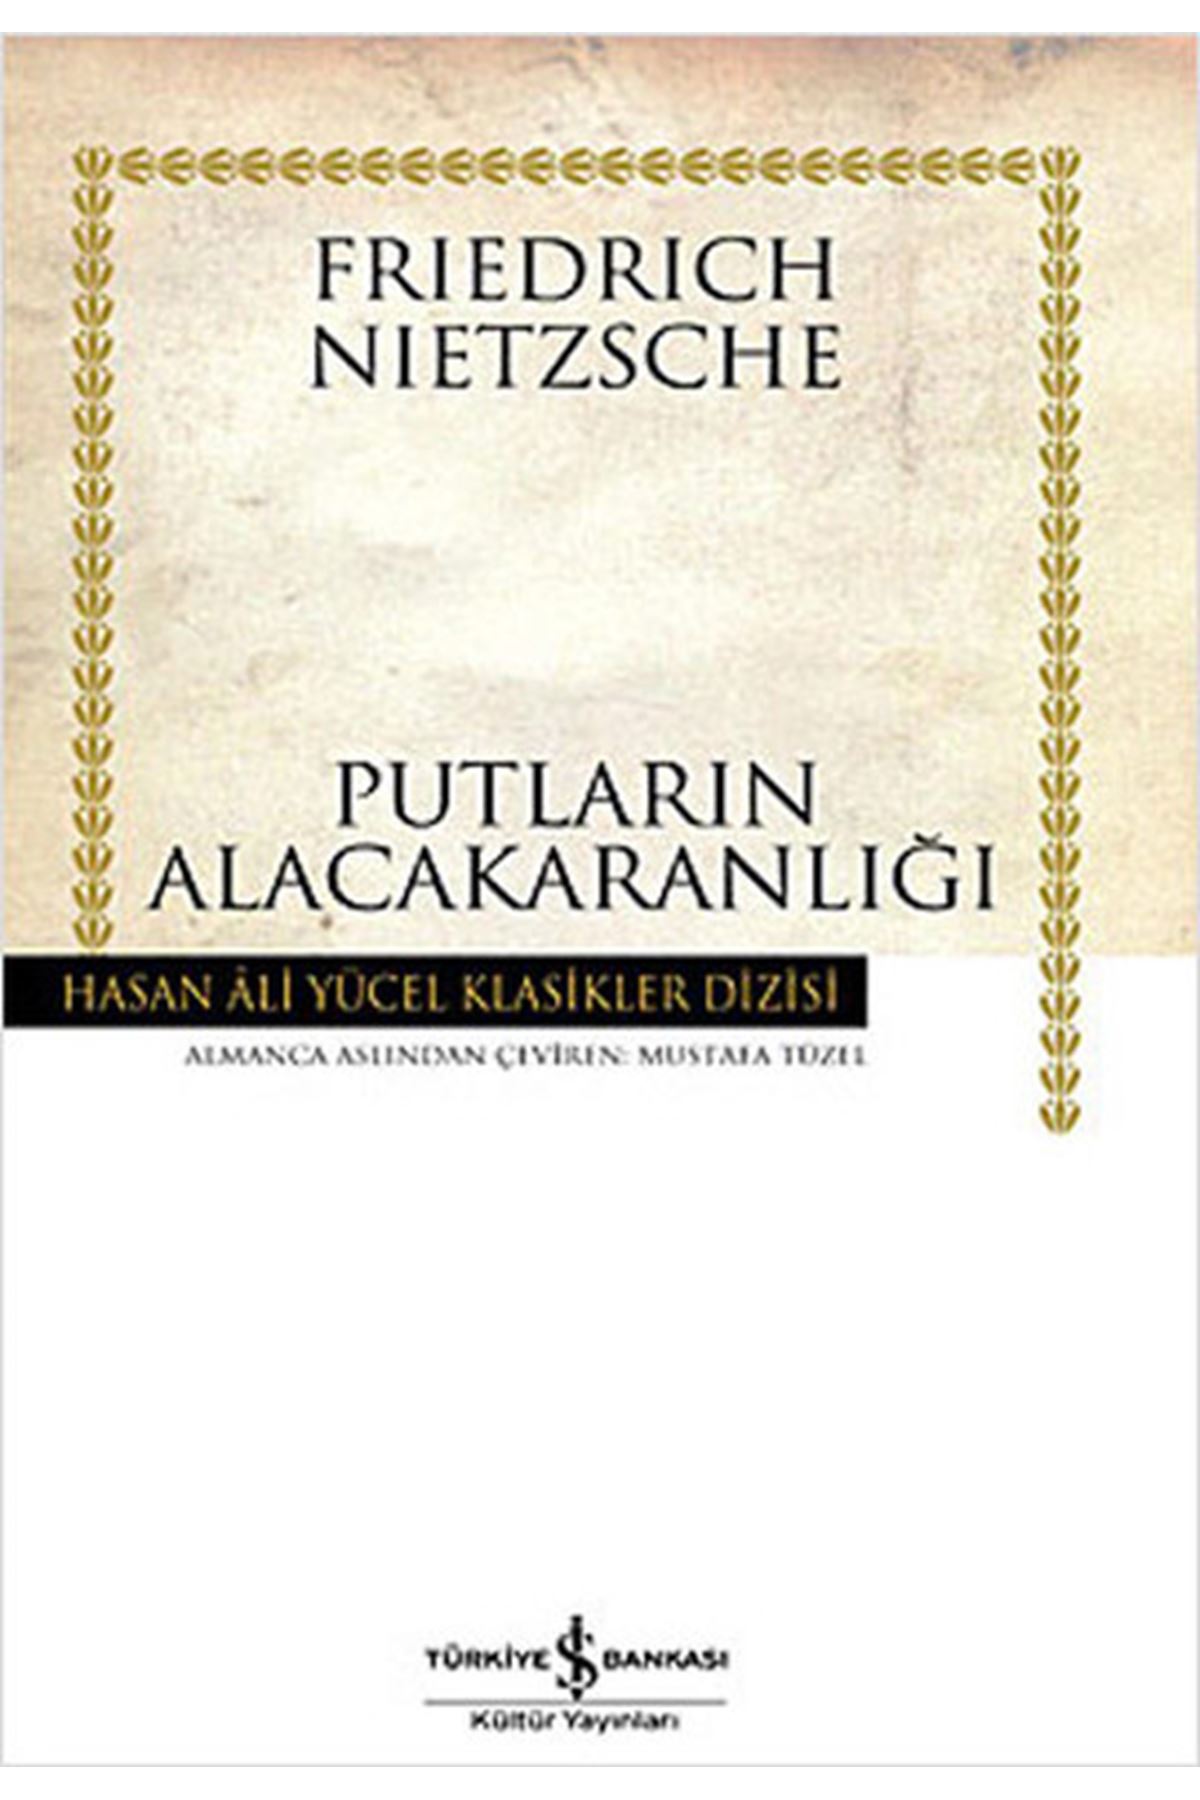 Frıedrıch Nıetzsche - Putların Alacakaranlığı - Hasan Ali Yücel Klasikleri